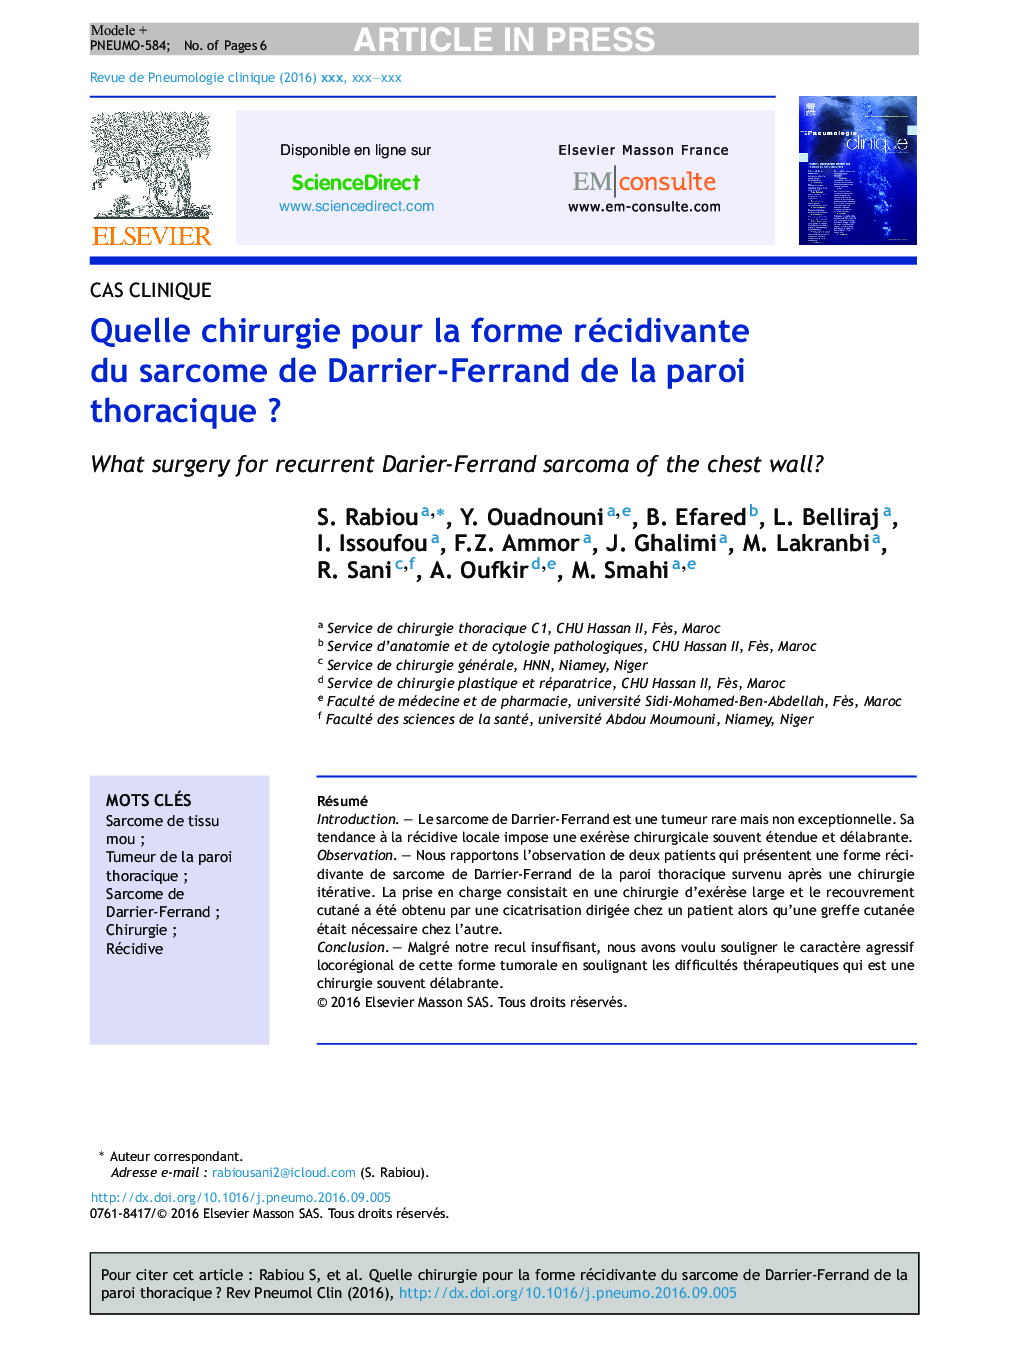 Quelle chirurgie pour la forme récidivante du sarcome de Darrier-Ferrand de la paroi thoraciqueÂ ?